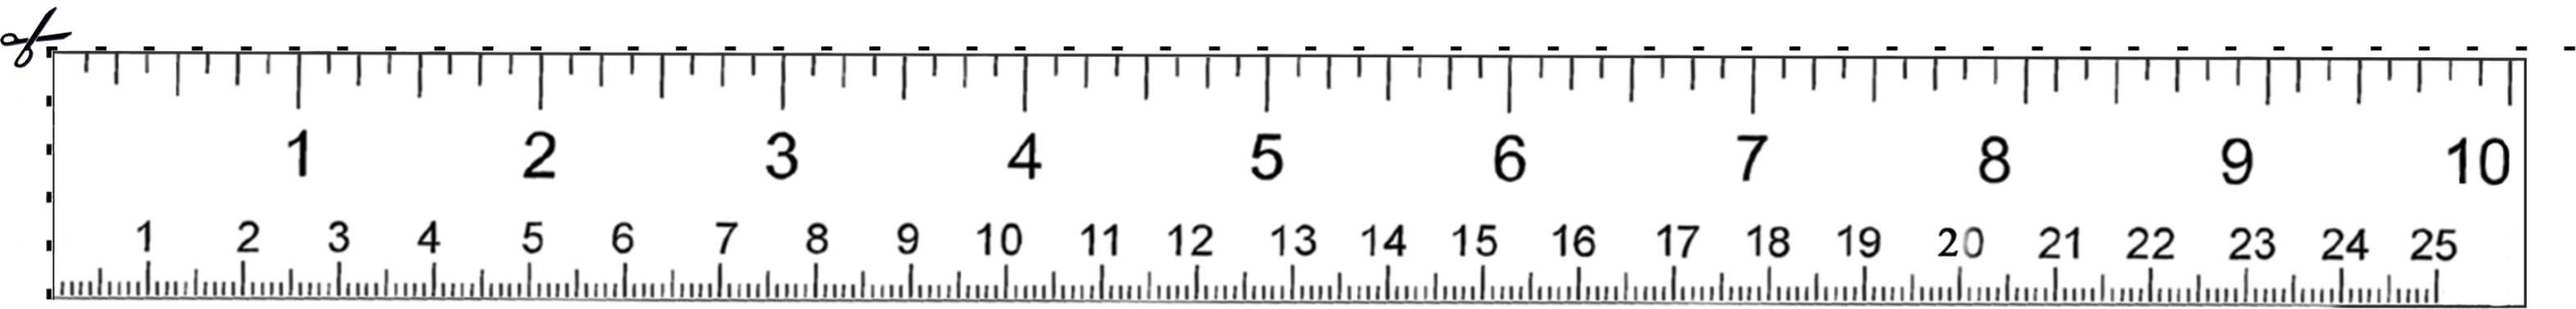 ruler-1